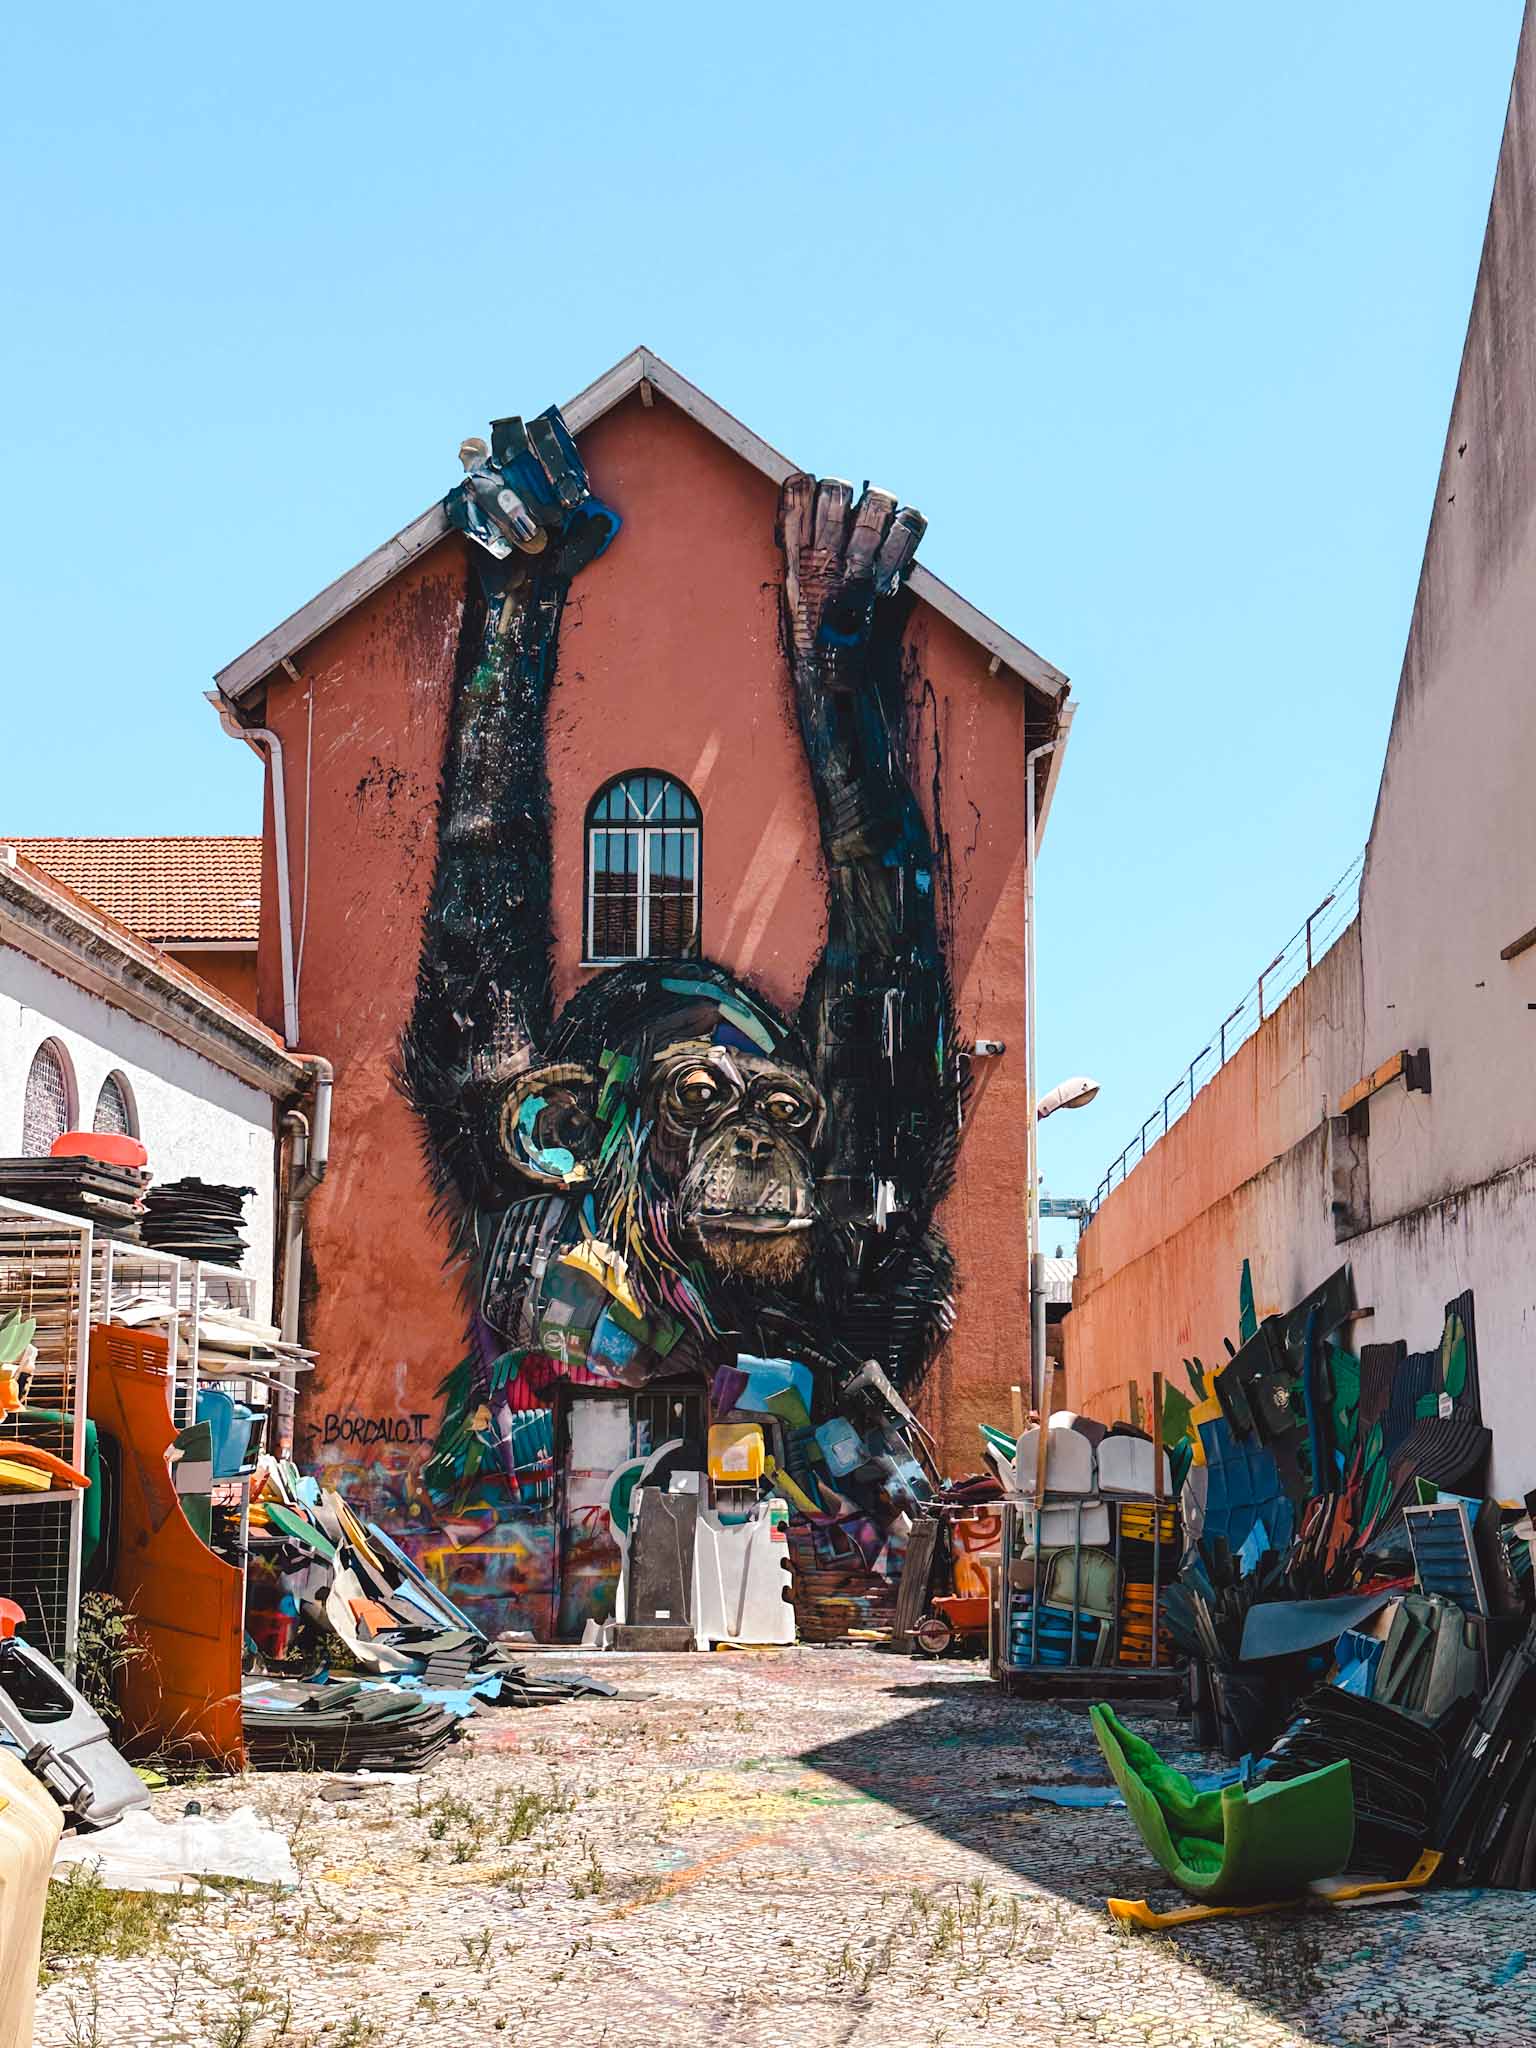 Best Instagram photo spots in Lisbon, Portugal - Street Art by Bordalo II - Monkey